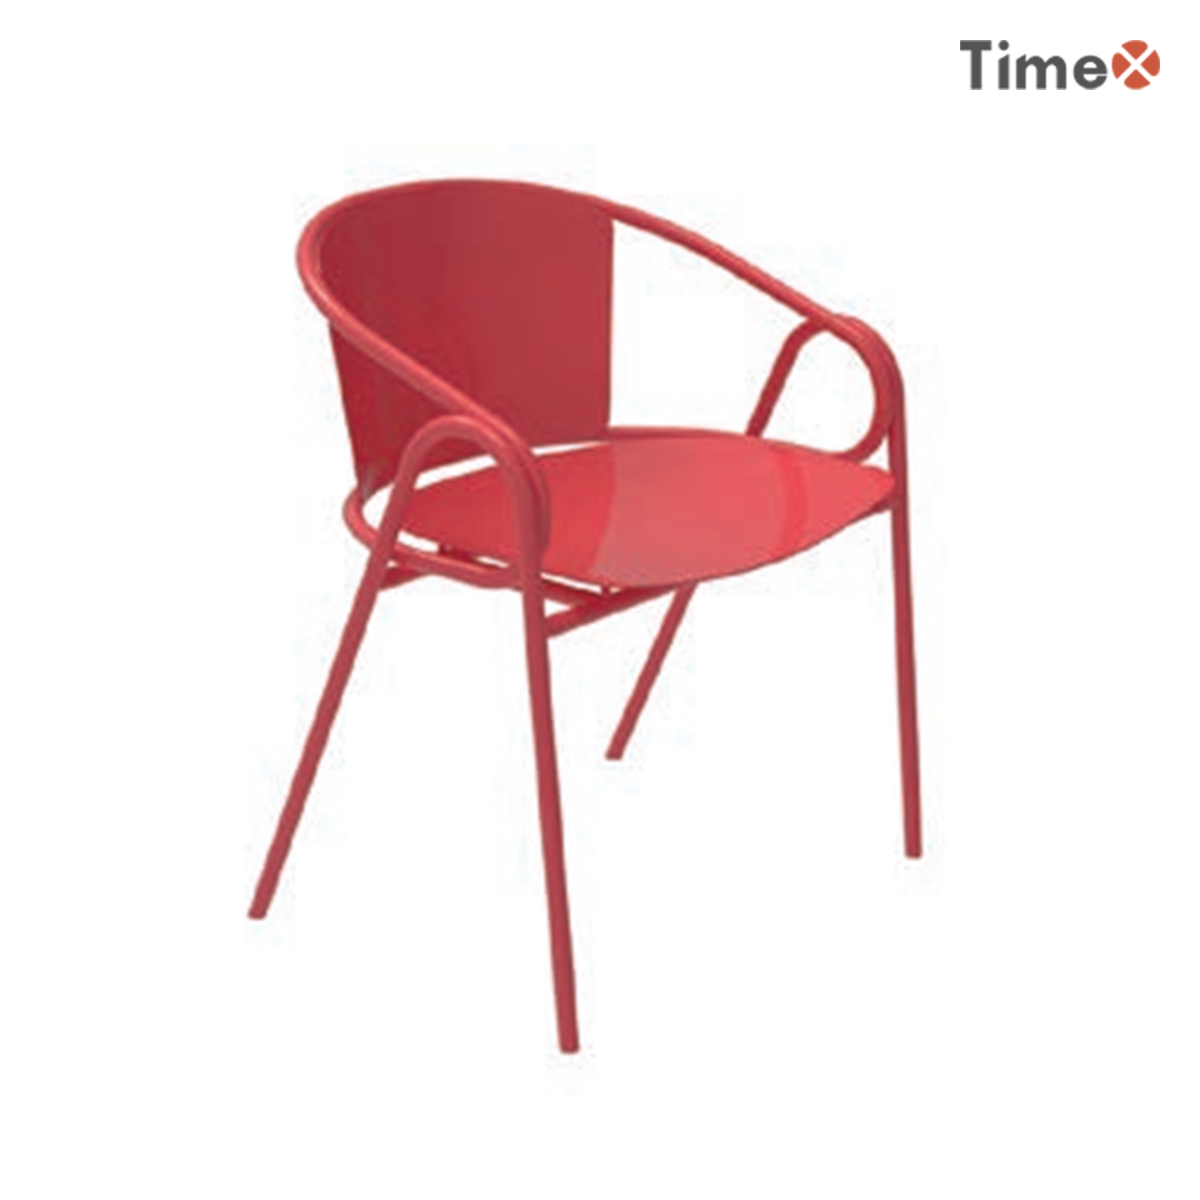 Der rote gemeinsame Stuhl.